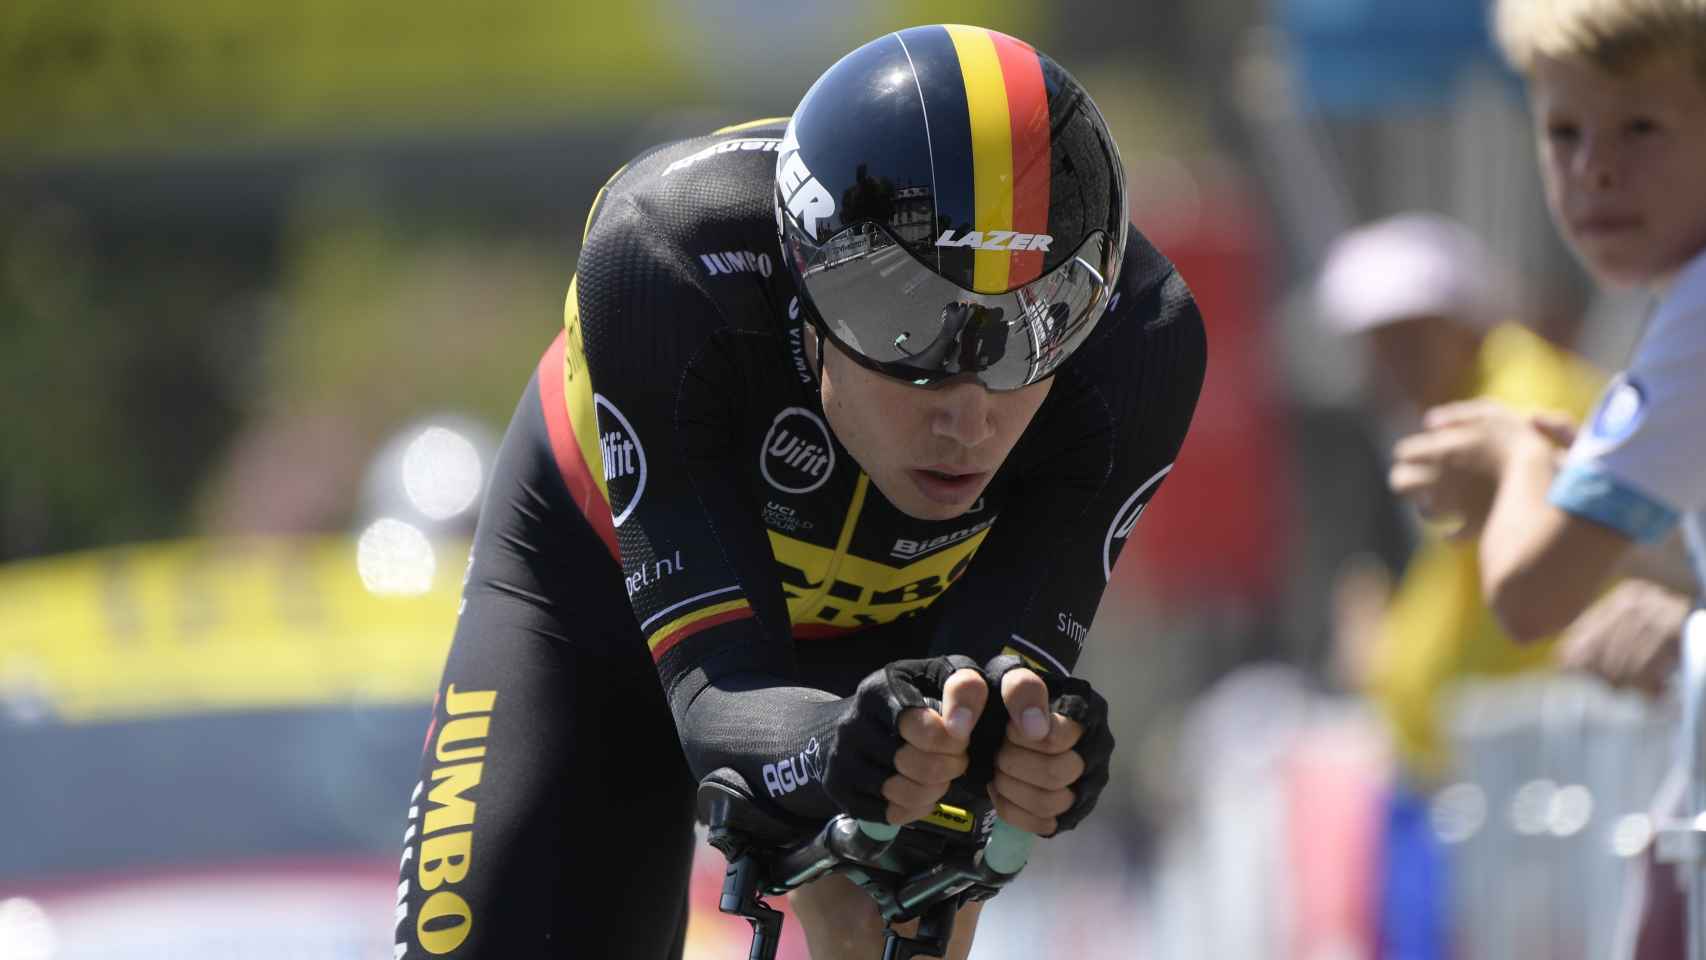 Wout Van Aert en la contrarreloj del Tour de Francia 2019 en Pau